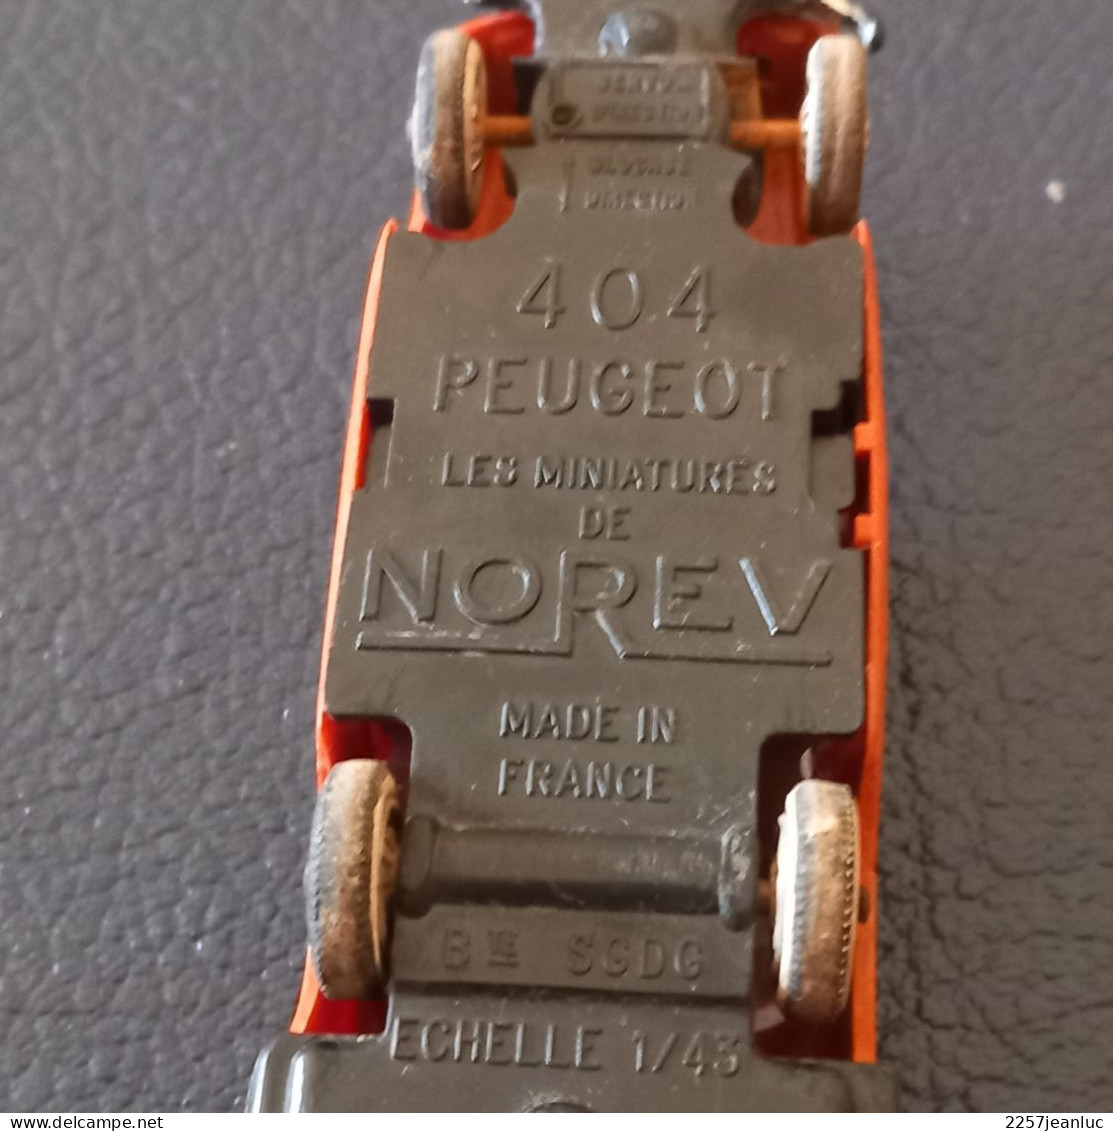 Peugeot 404 Maron Orange  Miniature  de  Norev ( Made in  France )   1/43   sans n: état bon